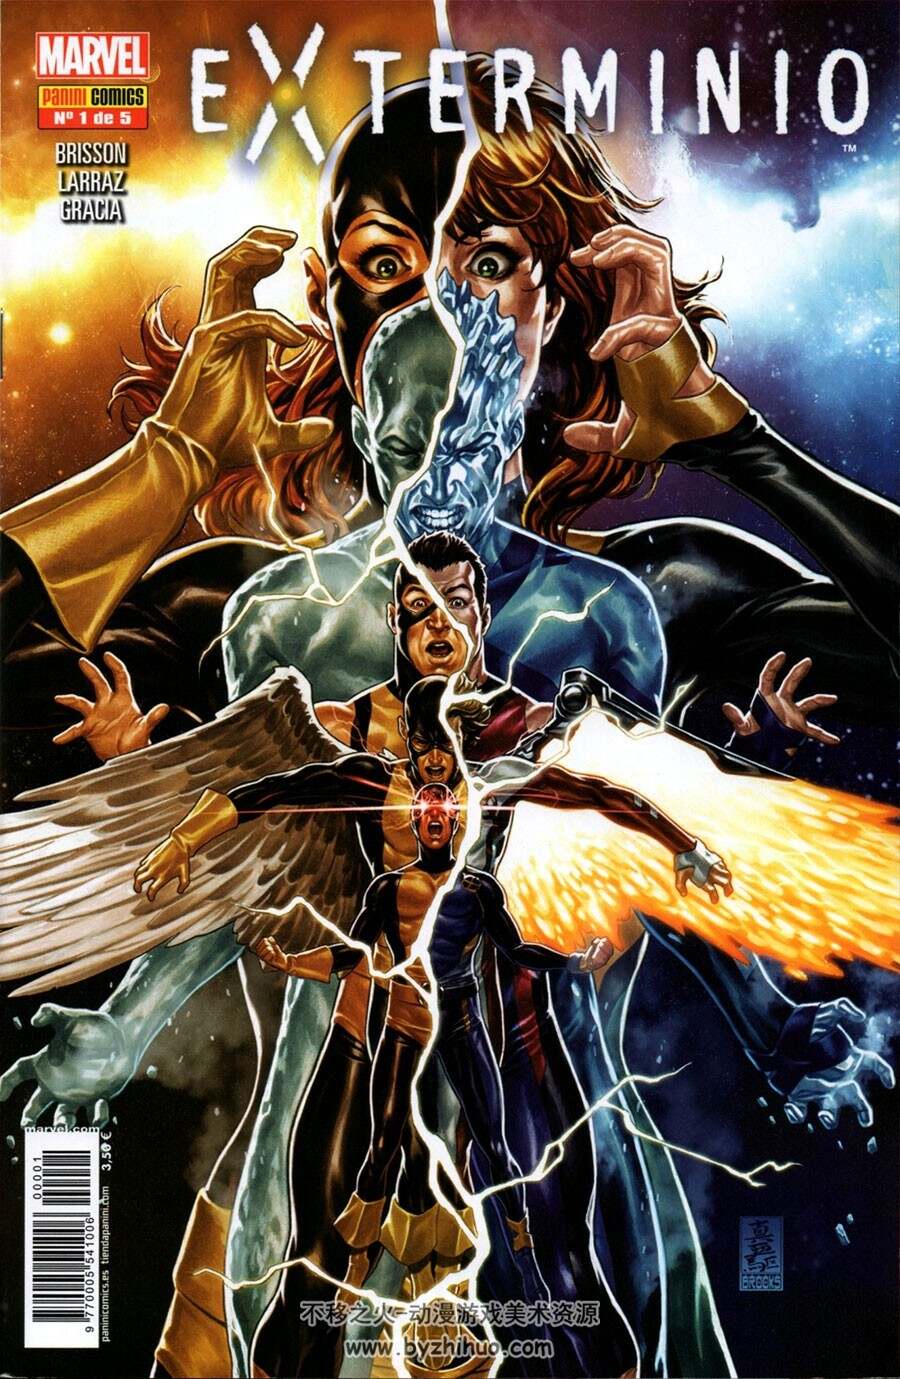 Exterminio 1-4册 美国漫威超级英雄科幻漫画西班牙语版下载